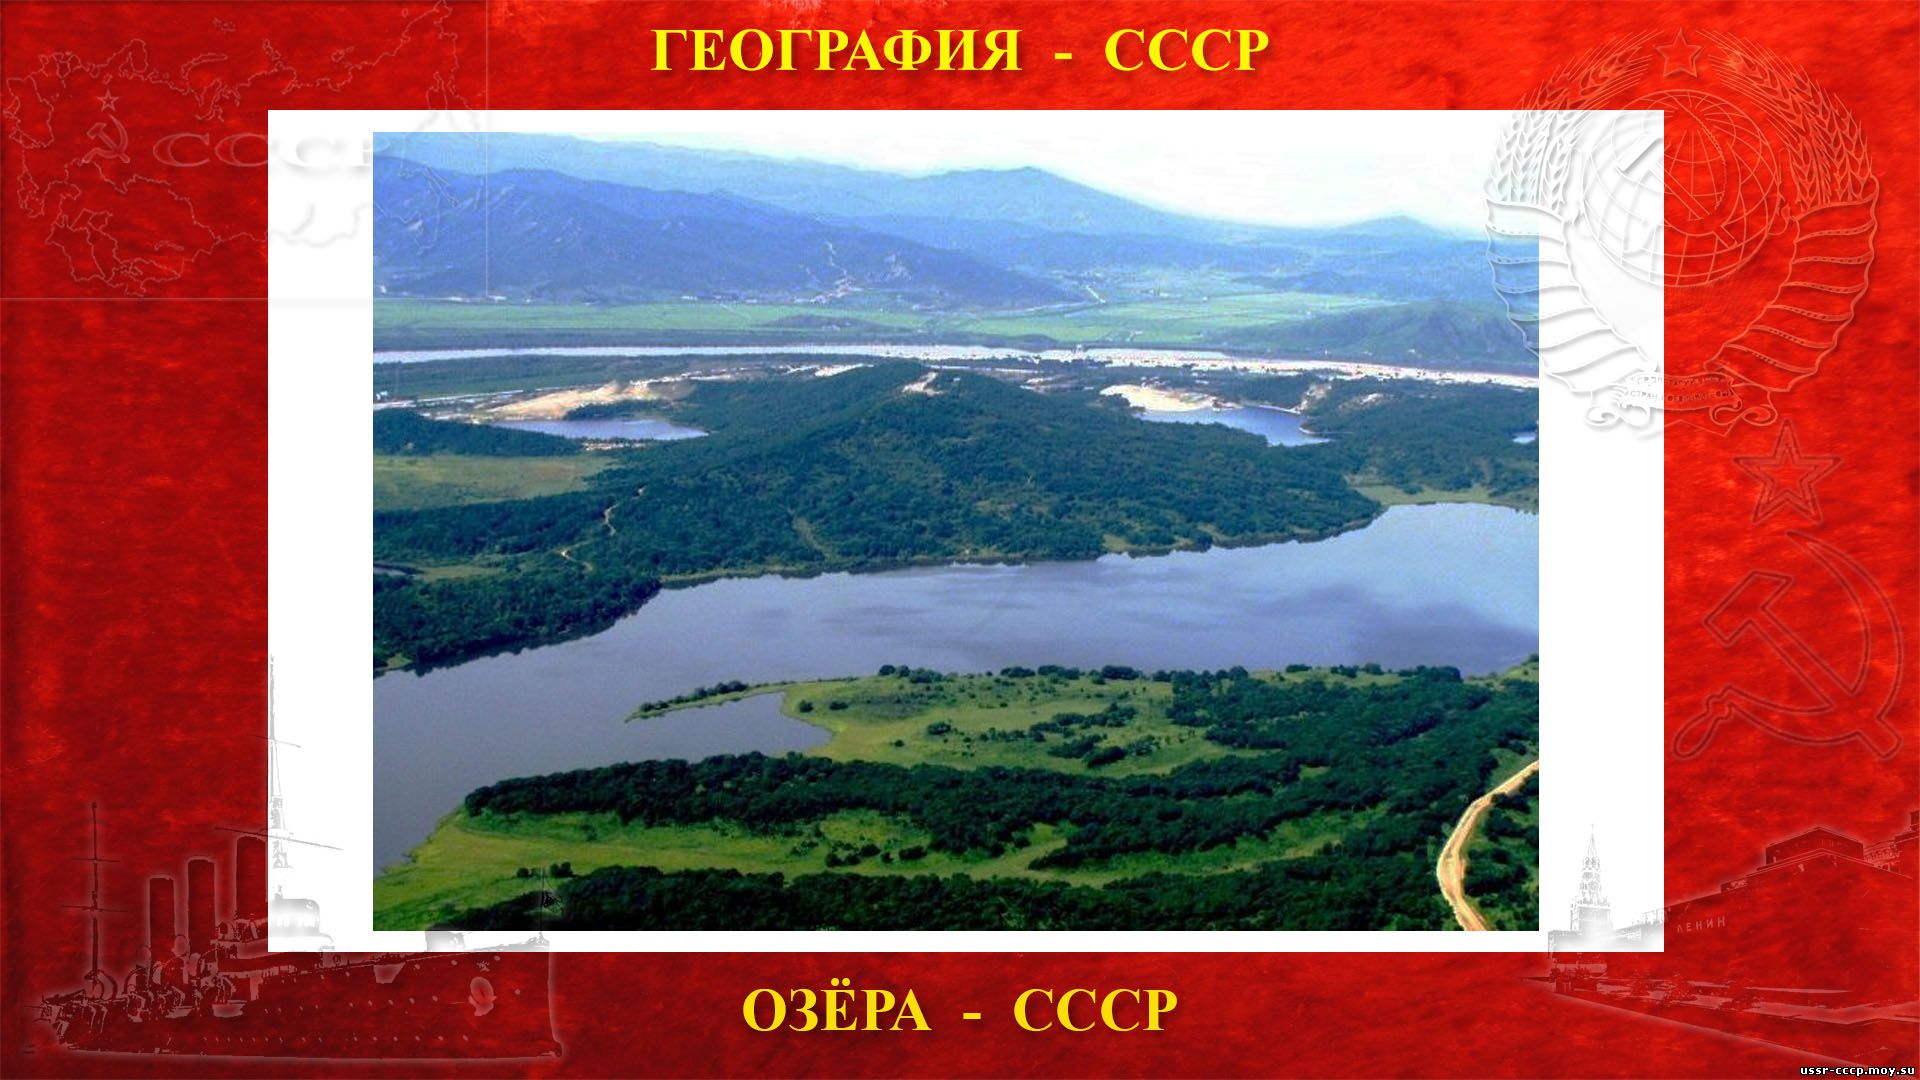 Хасан — Озеро пресноводное в Союза ССР (повествование)